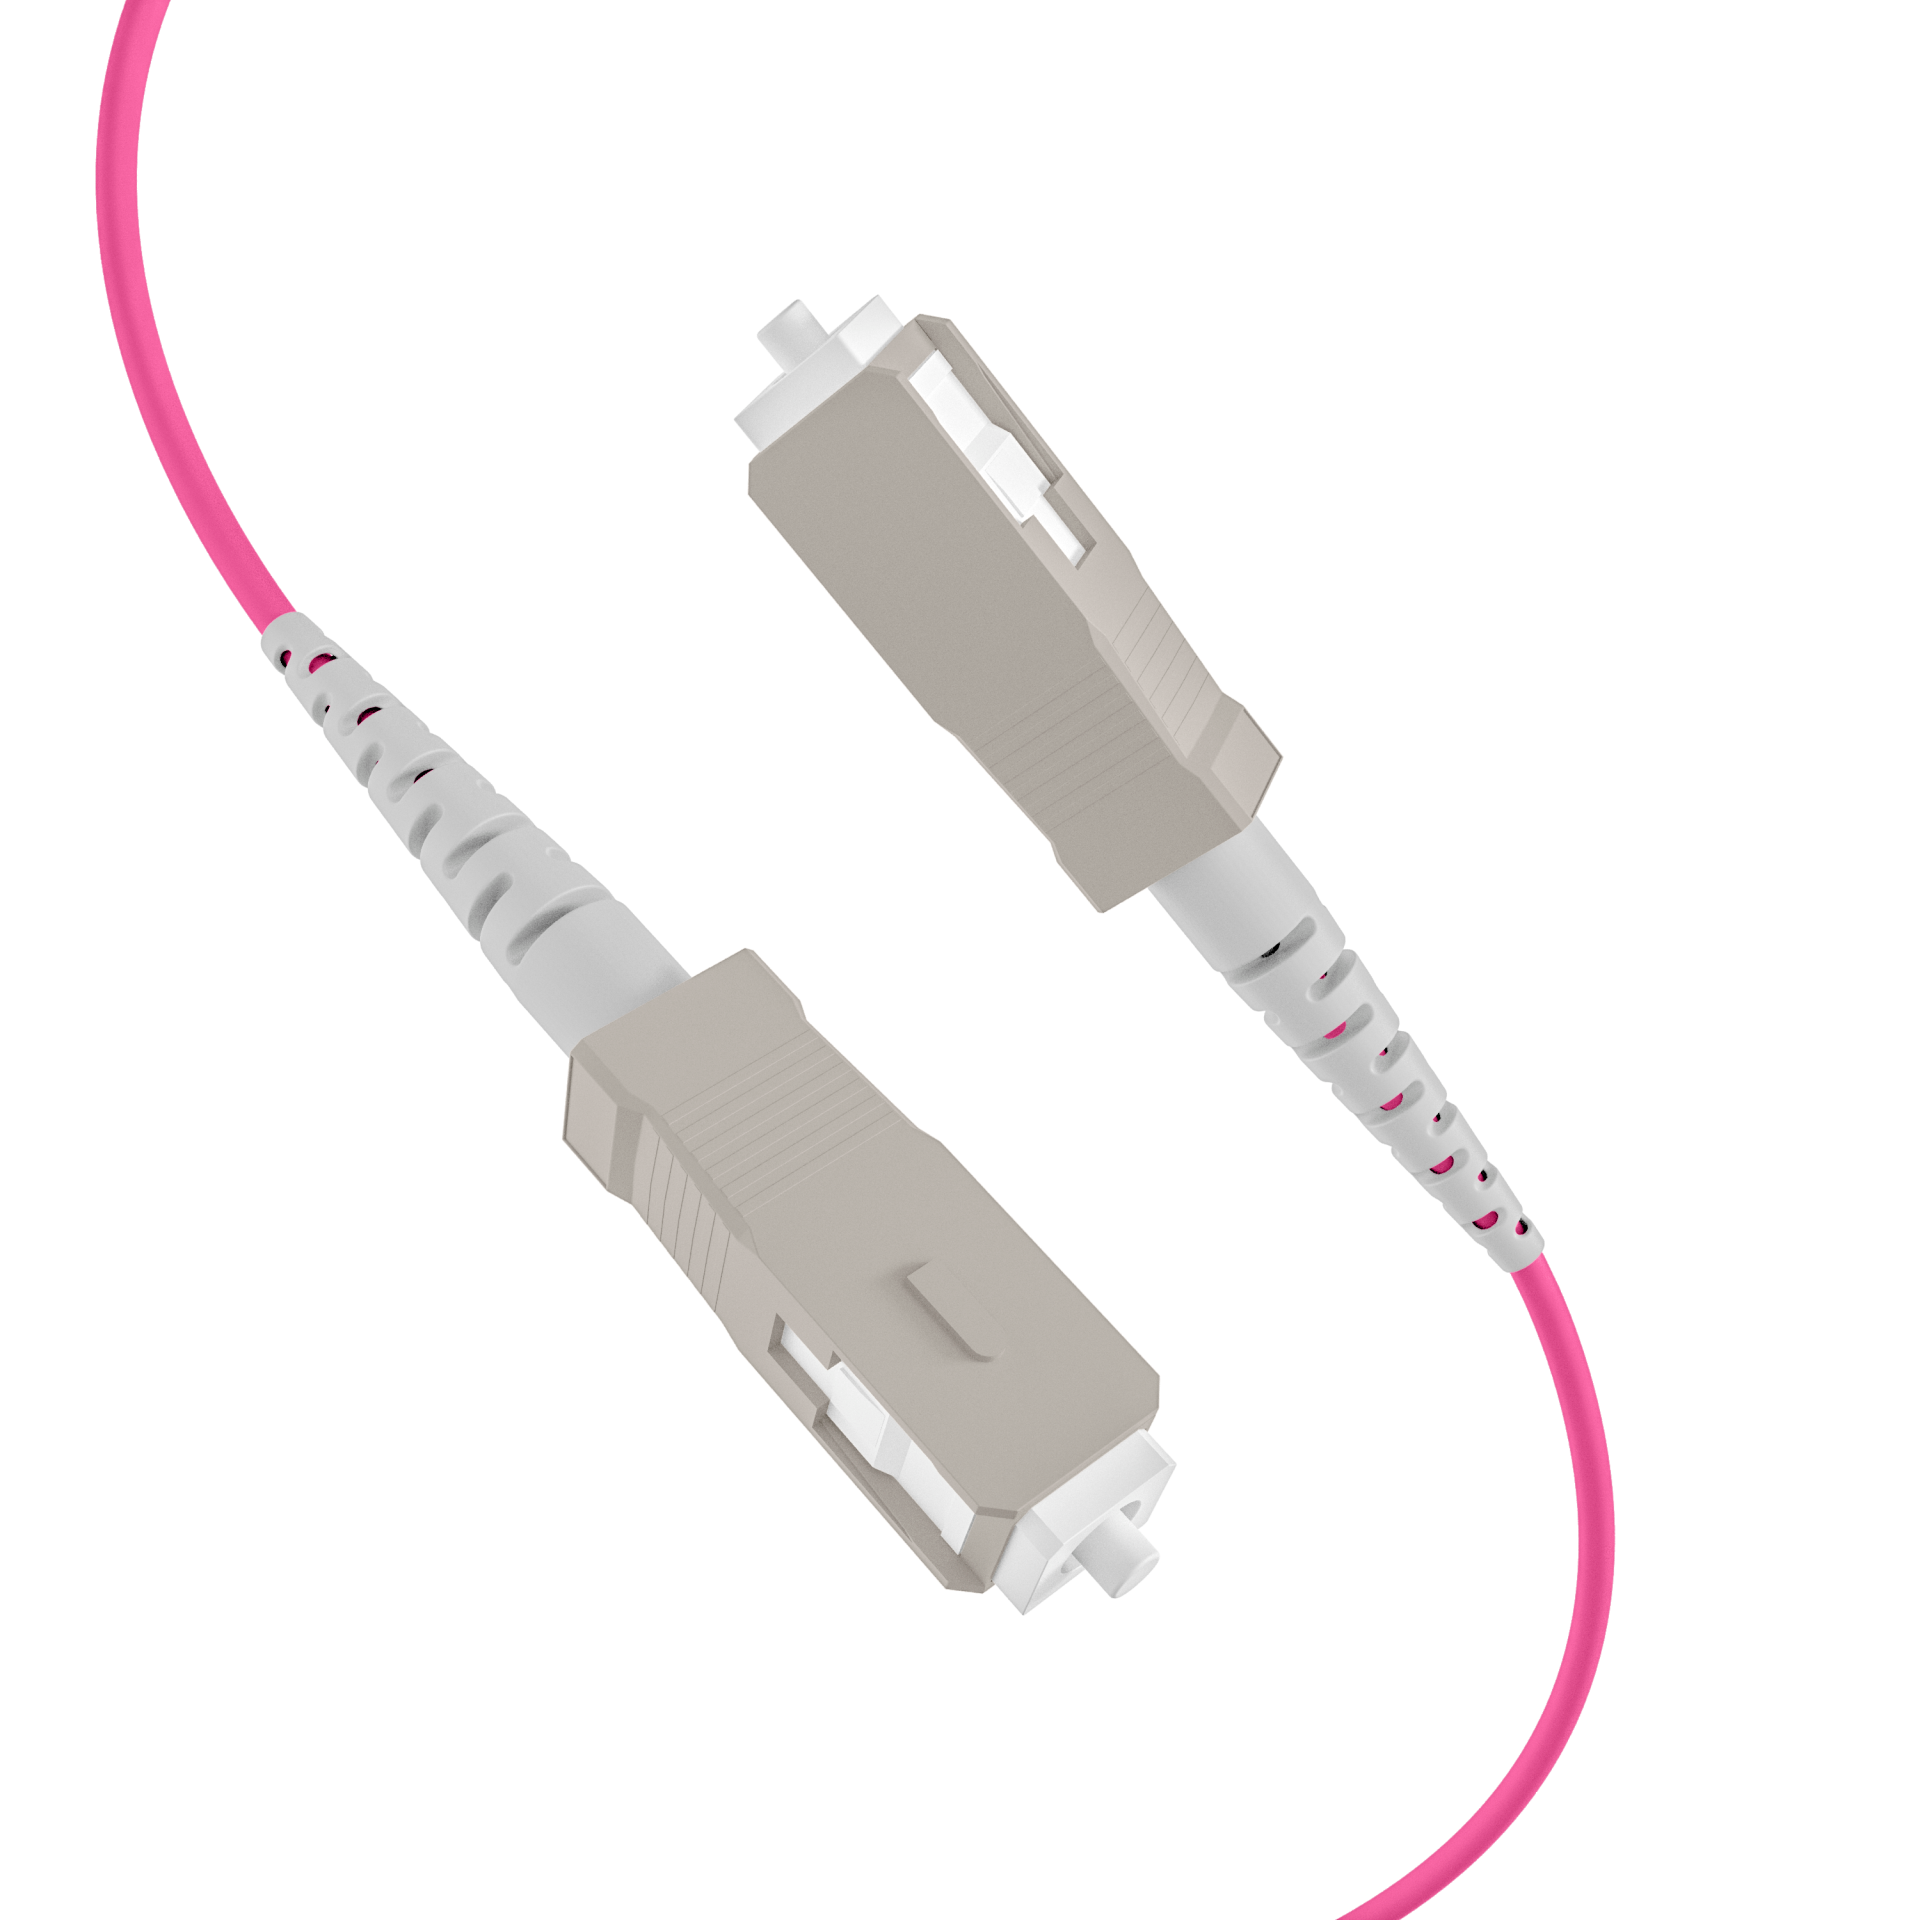 Trunk cable U-DQ(ZN)BH OM4 8G (1x8) SC-SC,30m Dca LSZH